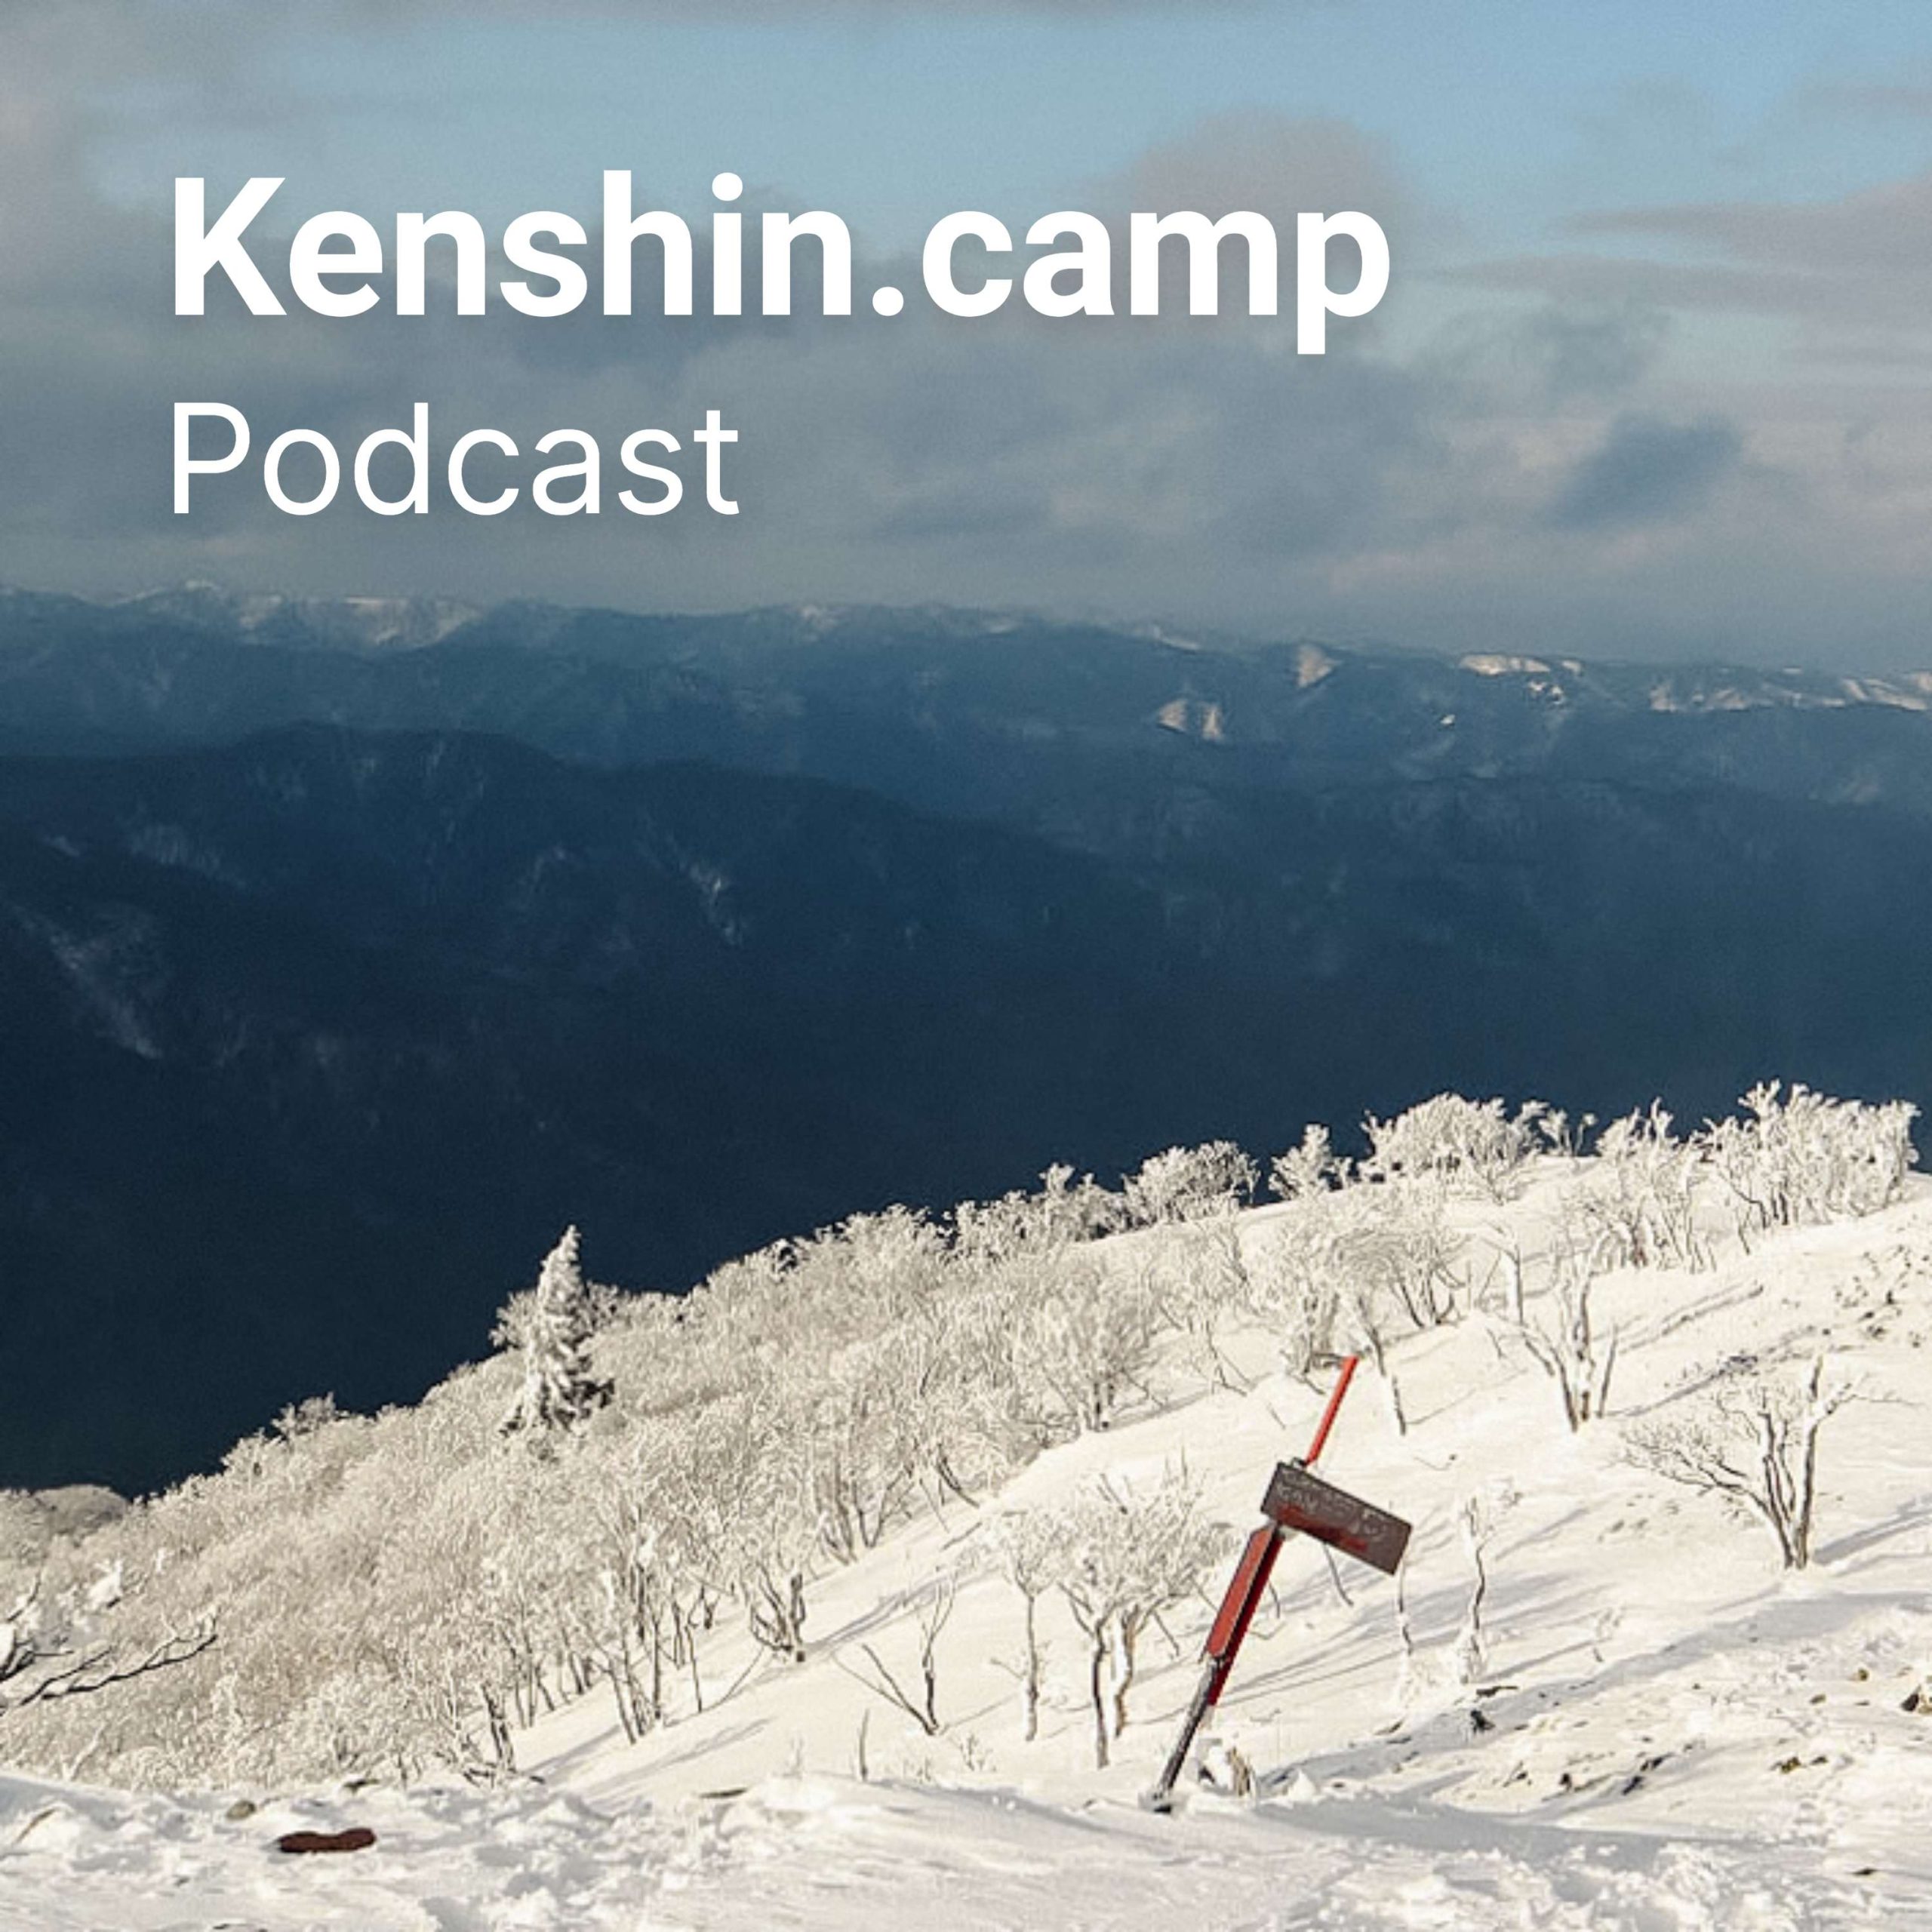 Kenshin.camp